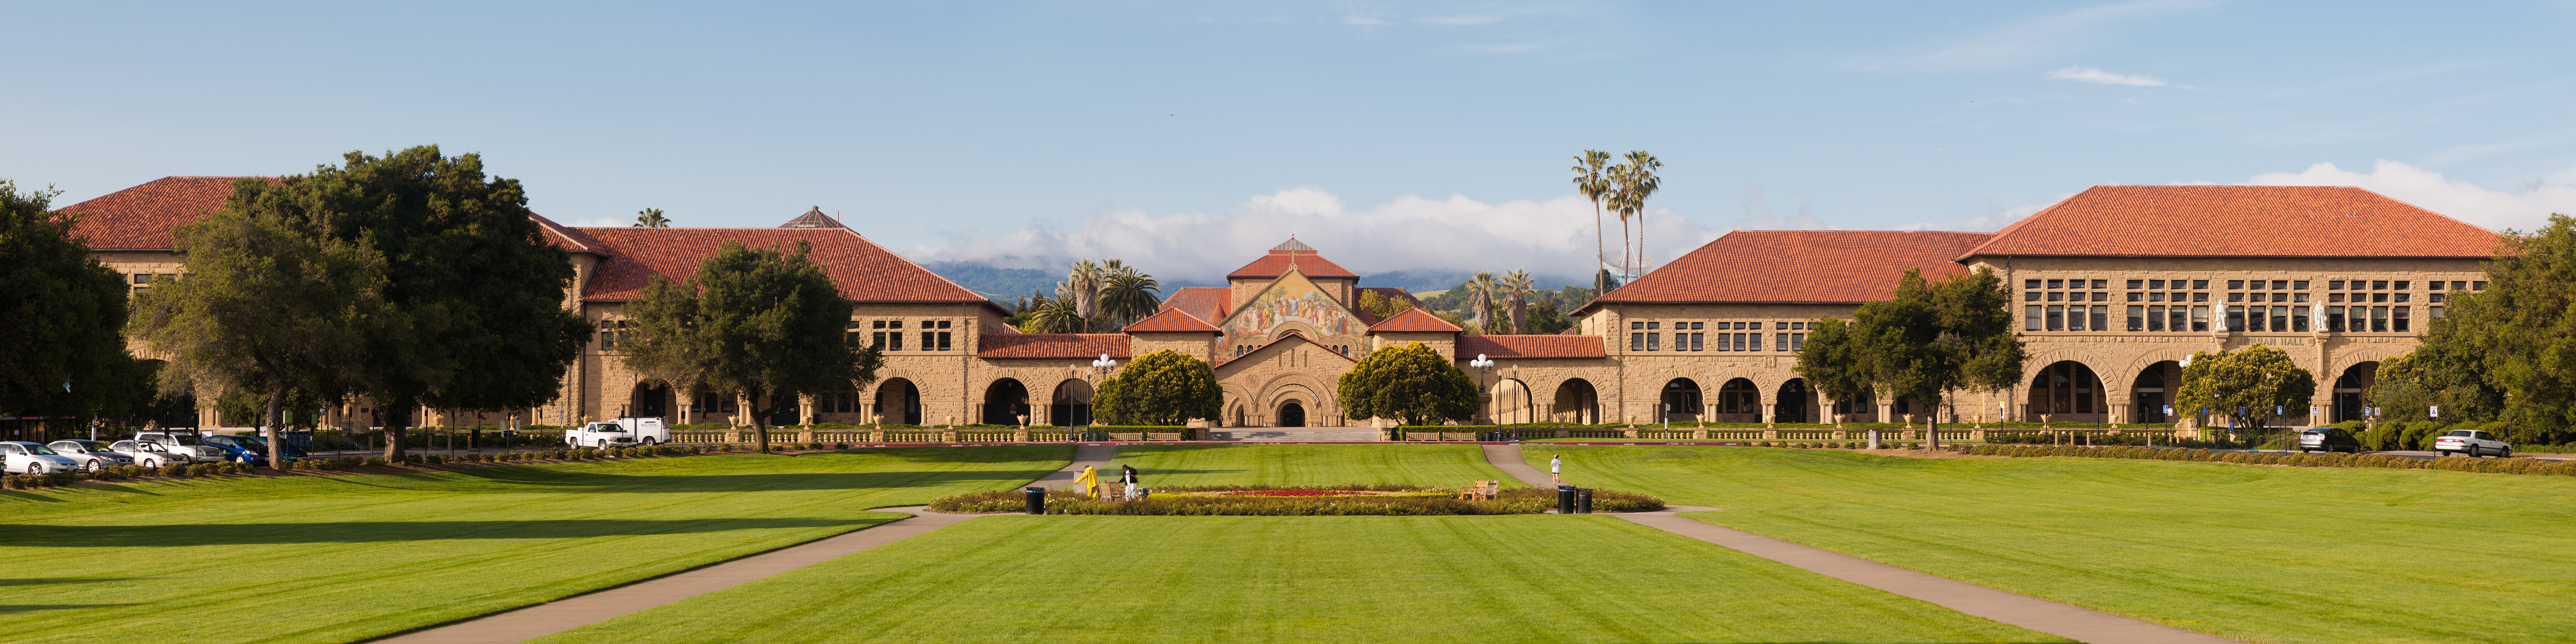 Stanford University - Wikipedia